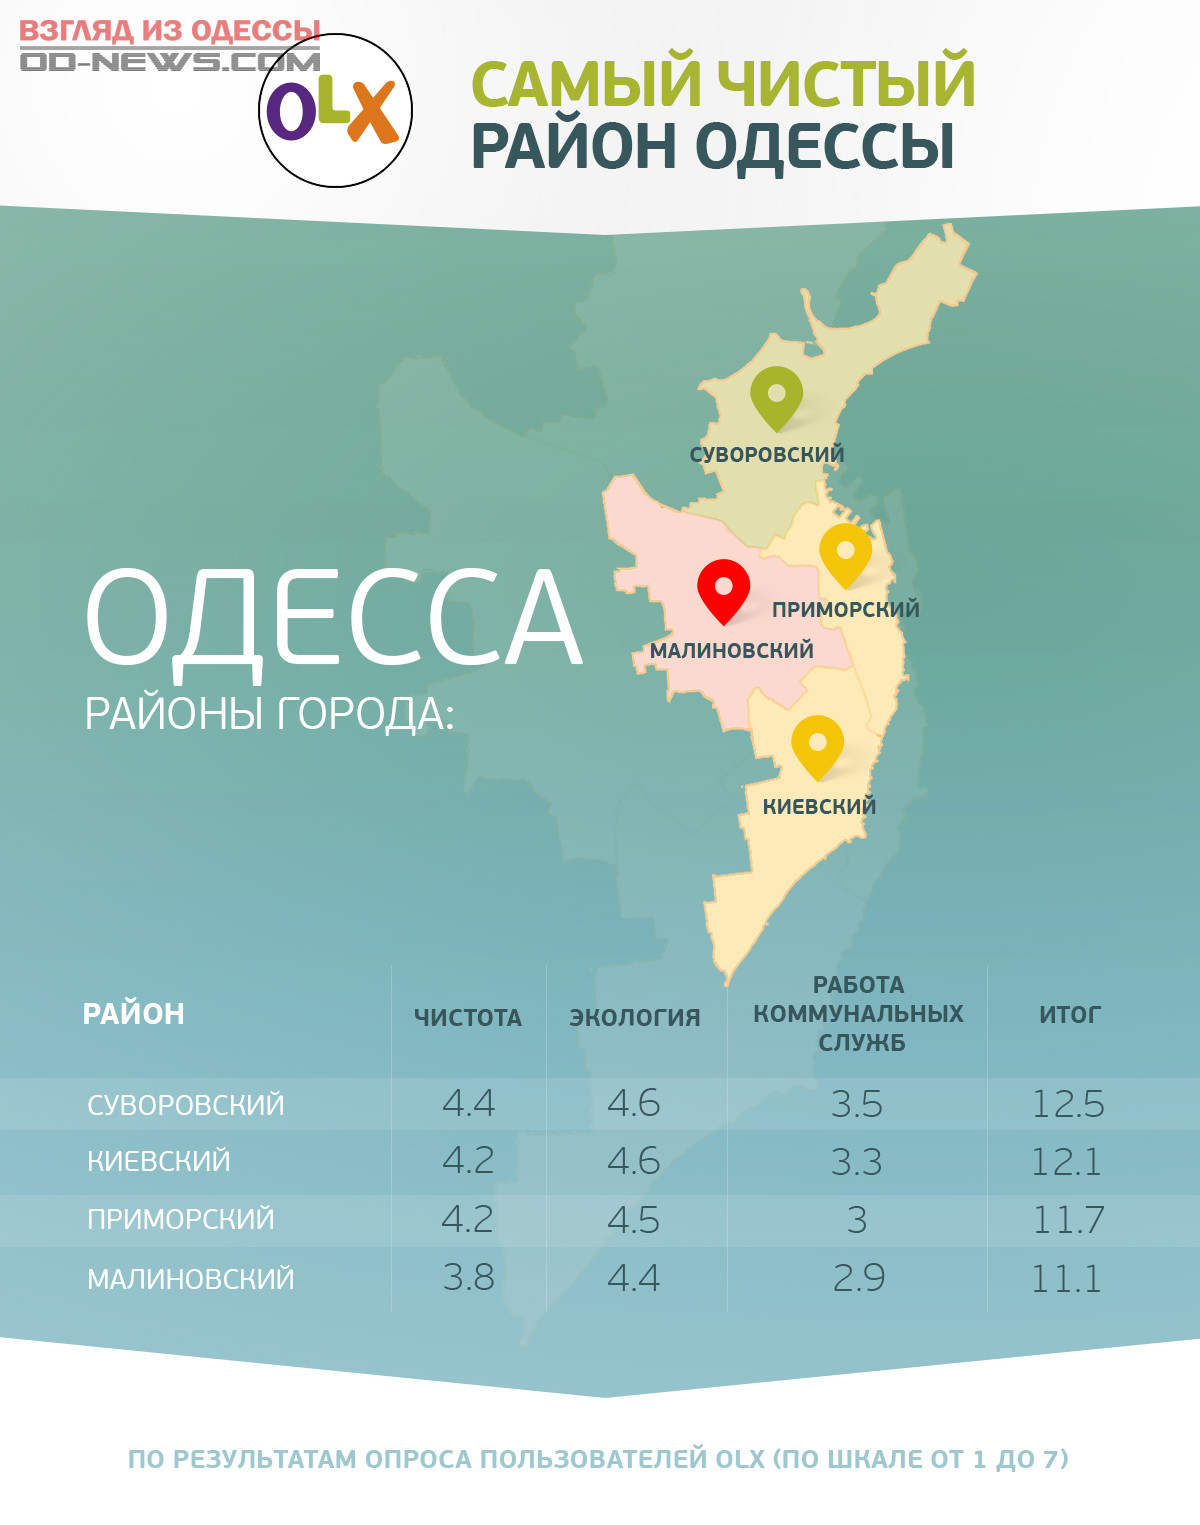 Одесские названия. Районы Одессы. Районы Одессы названия. Карта Одессы с районами. Одесса районы города.